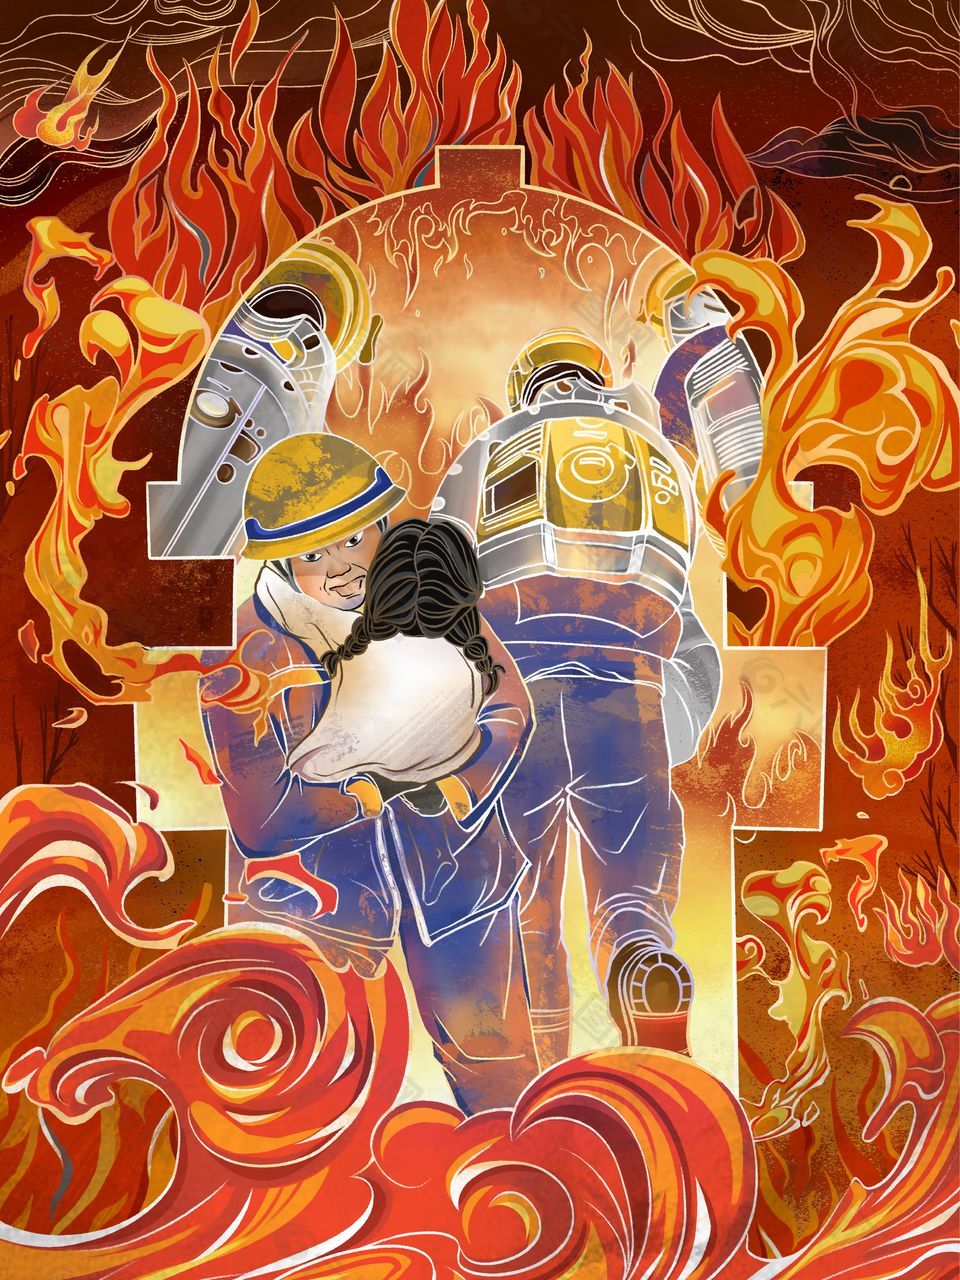 119消防宣传日海报